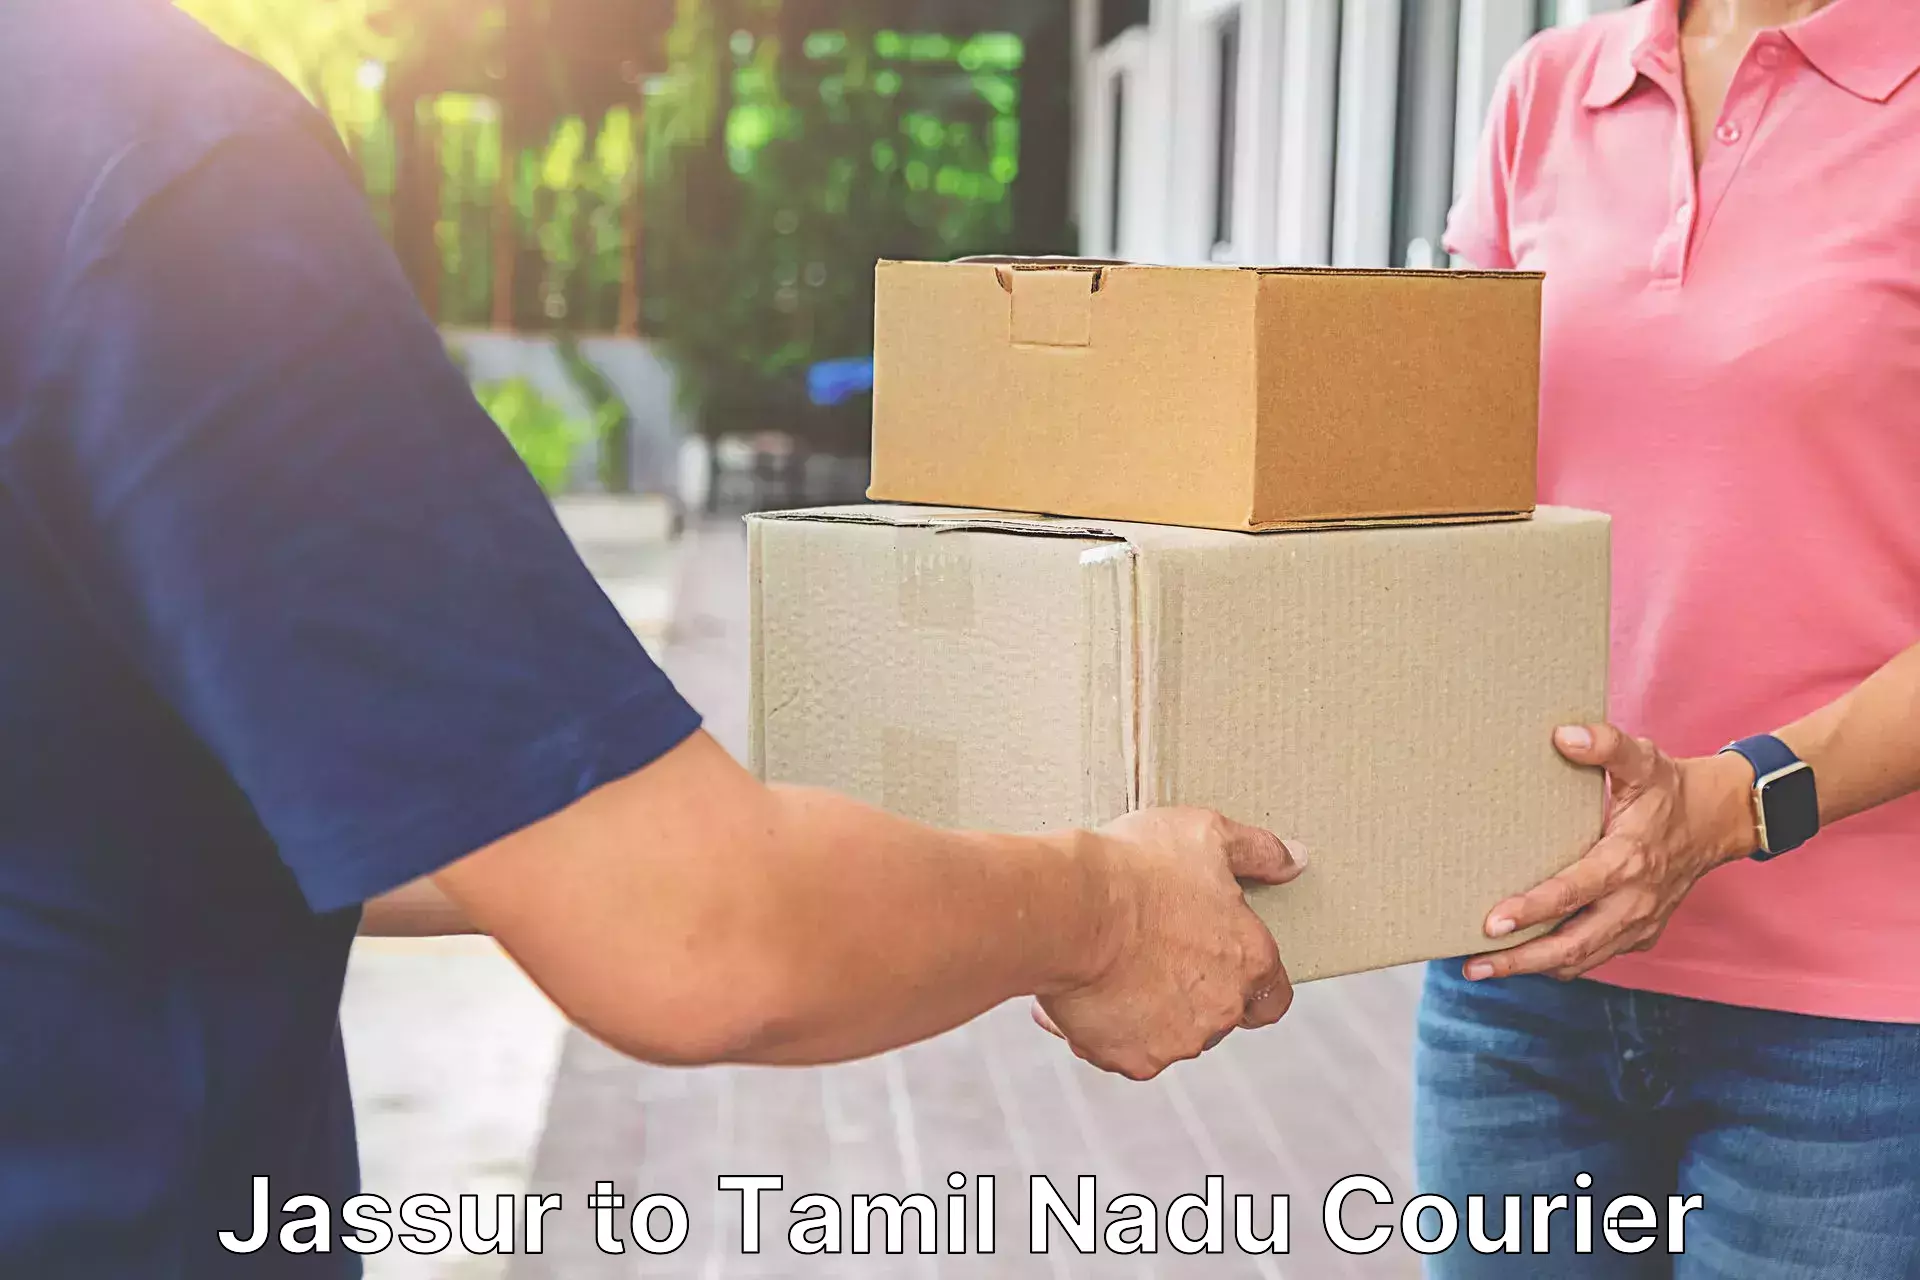 Reliable courier service Jassur to Kodumudi